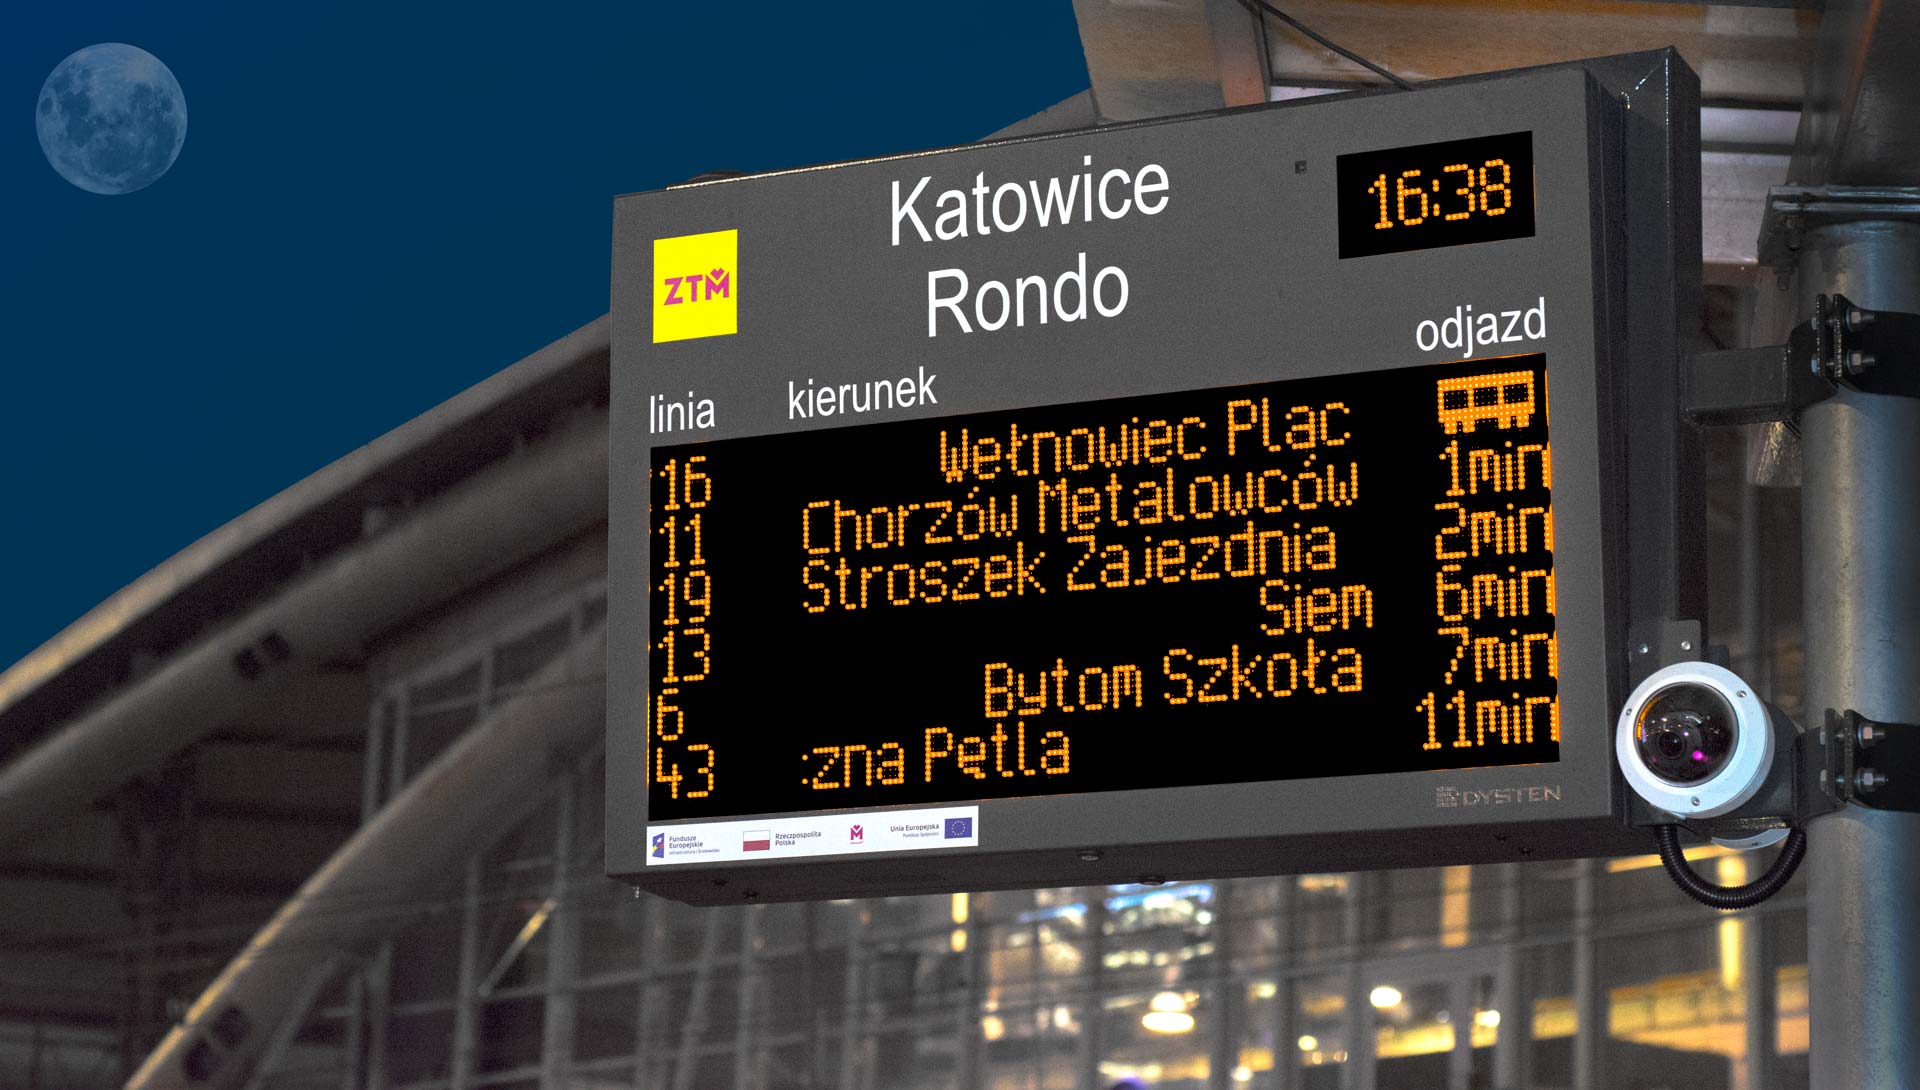 LED real-time passenger information display boards. PIS GZM Metropolis, Poland. Wyświetlacze informacji pasażerskiej w technologii LED amber. SDIP GZM Metropolia